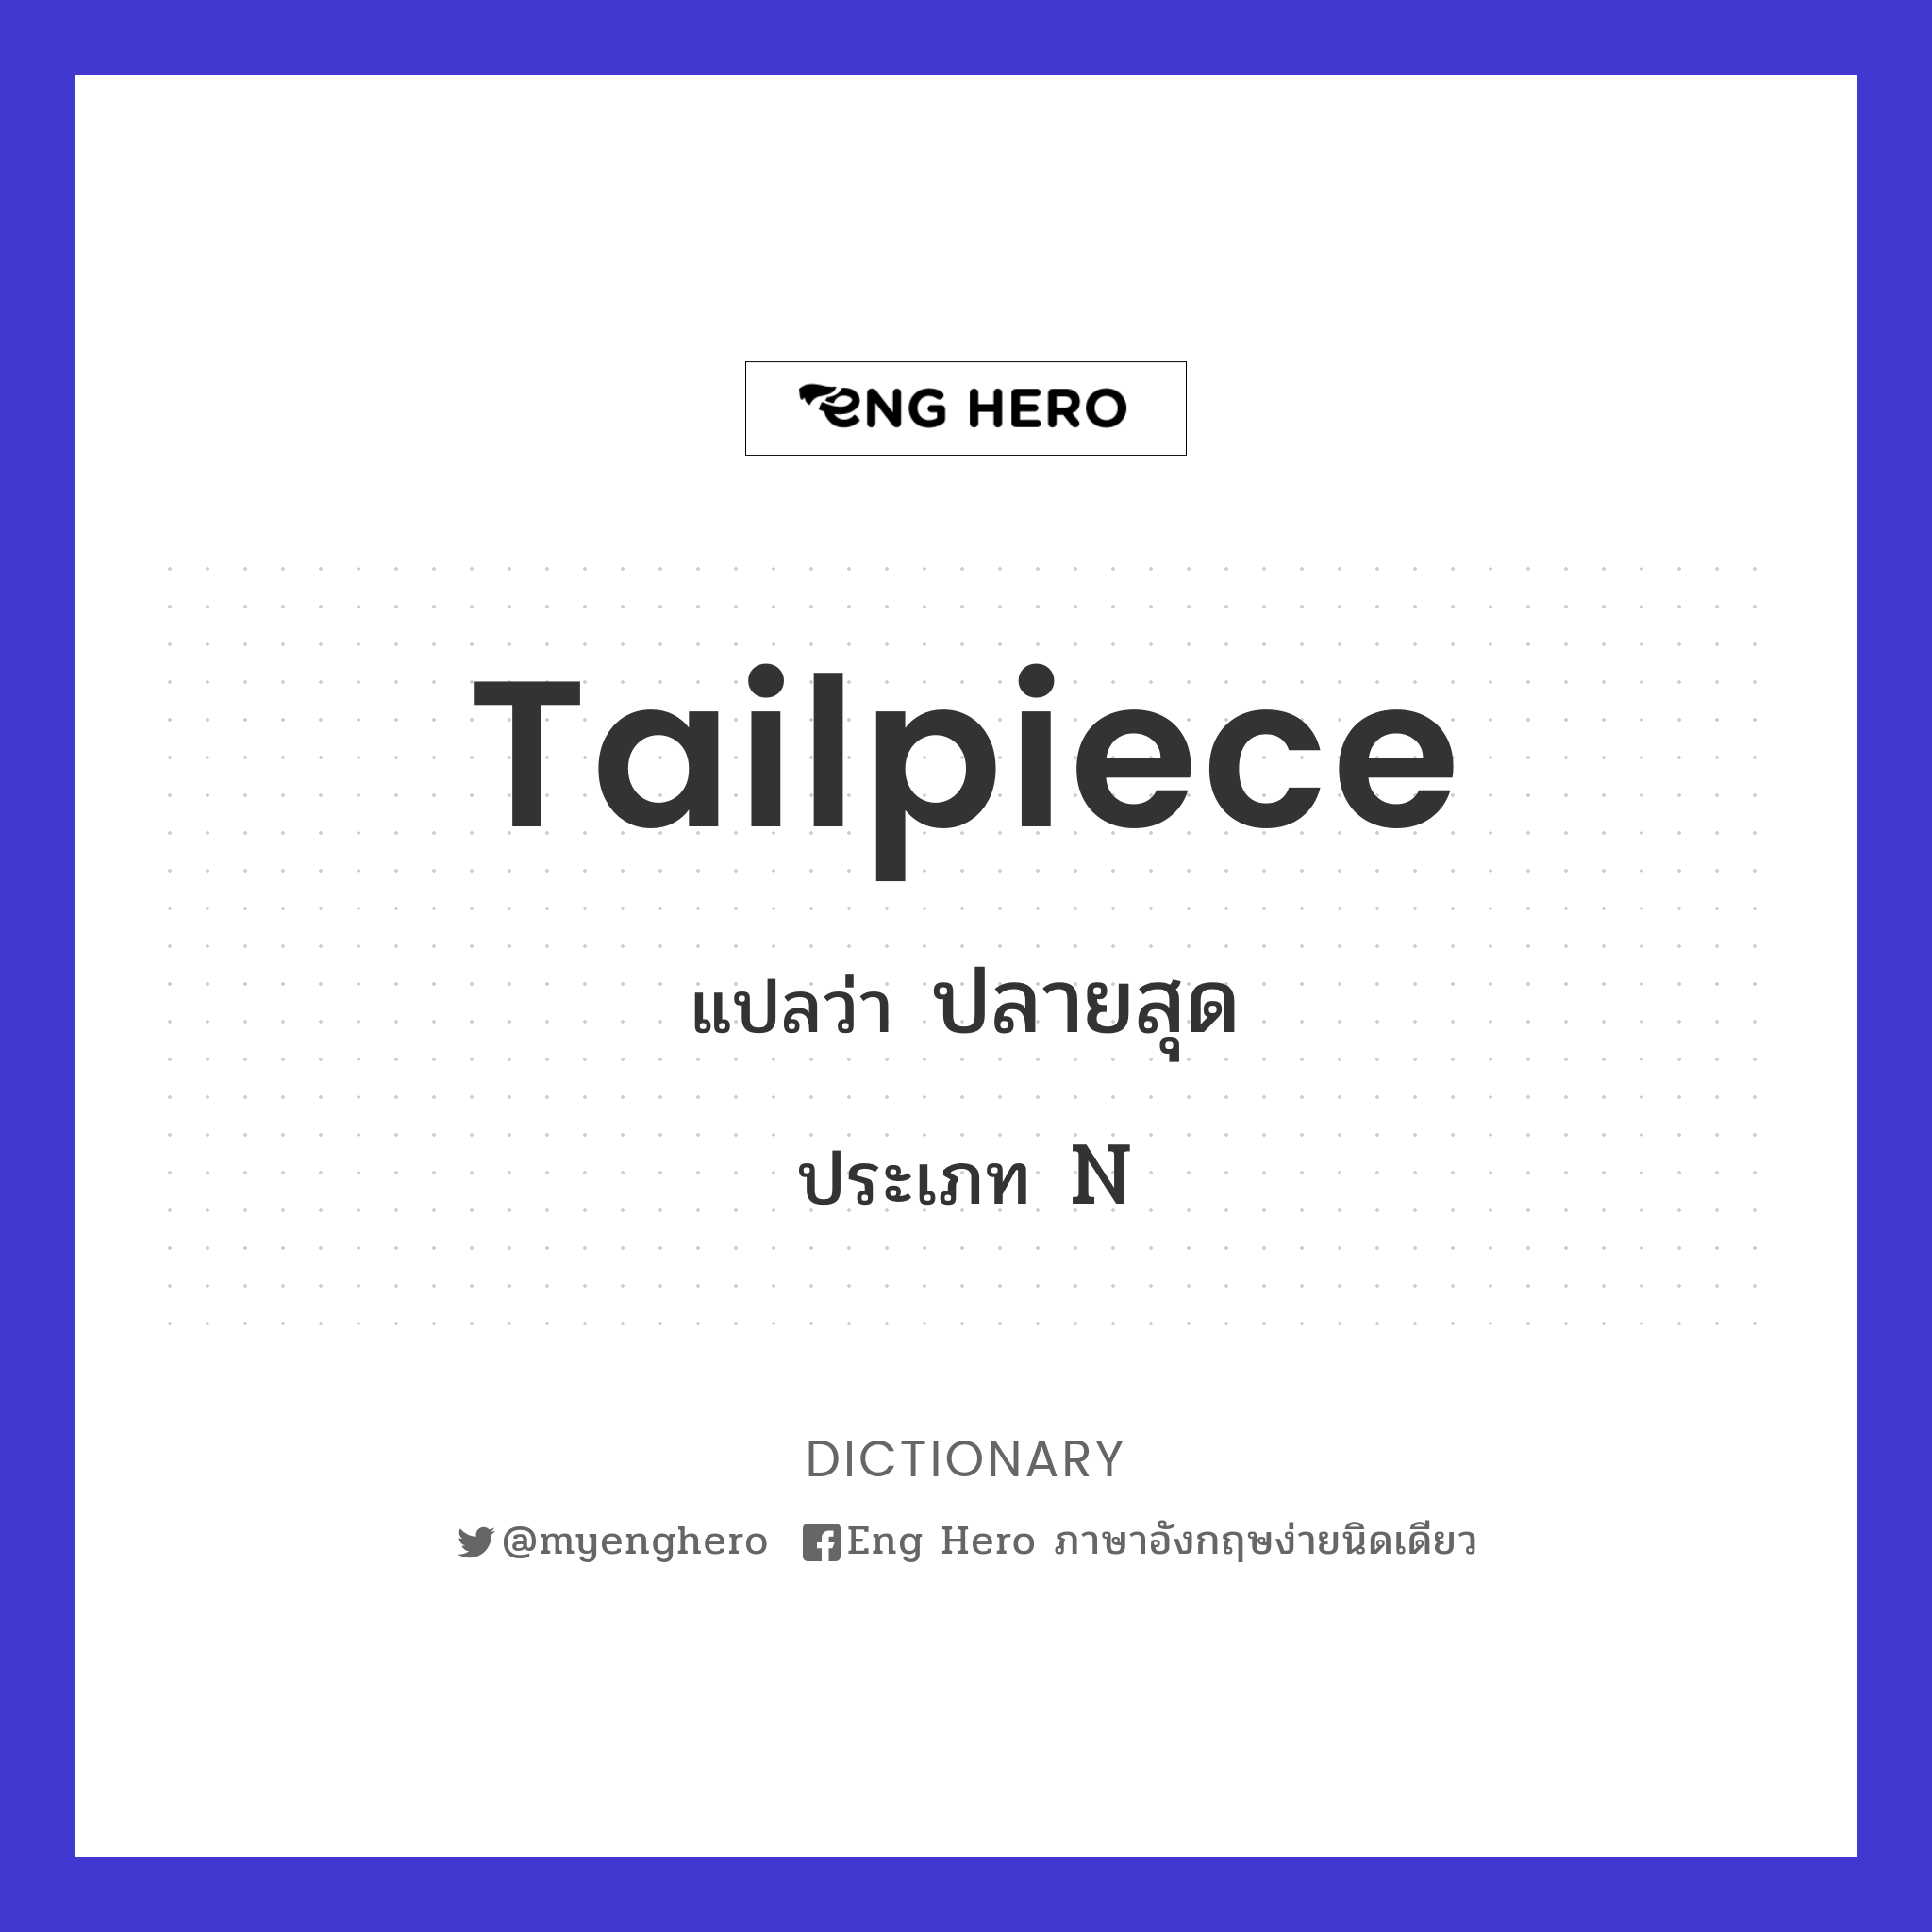 tailpiece